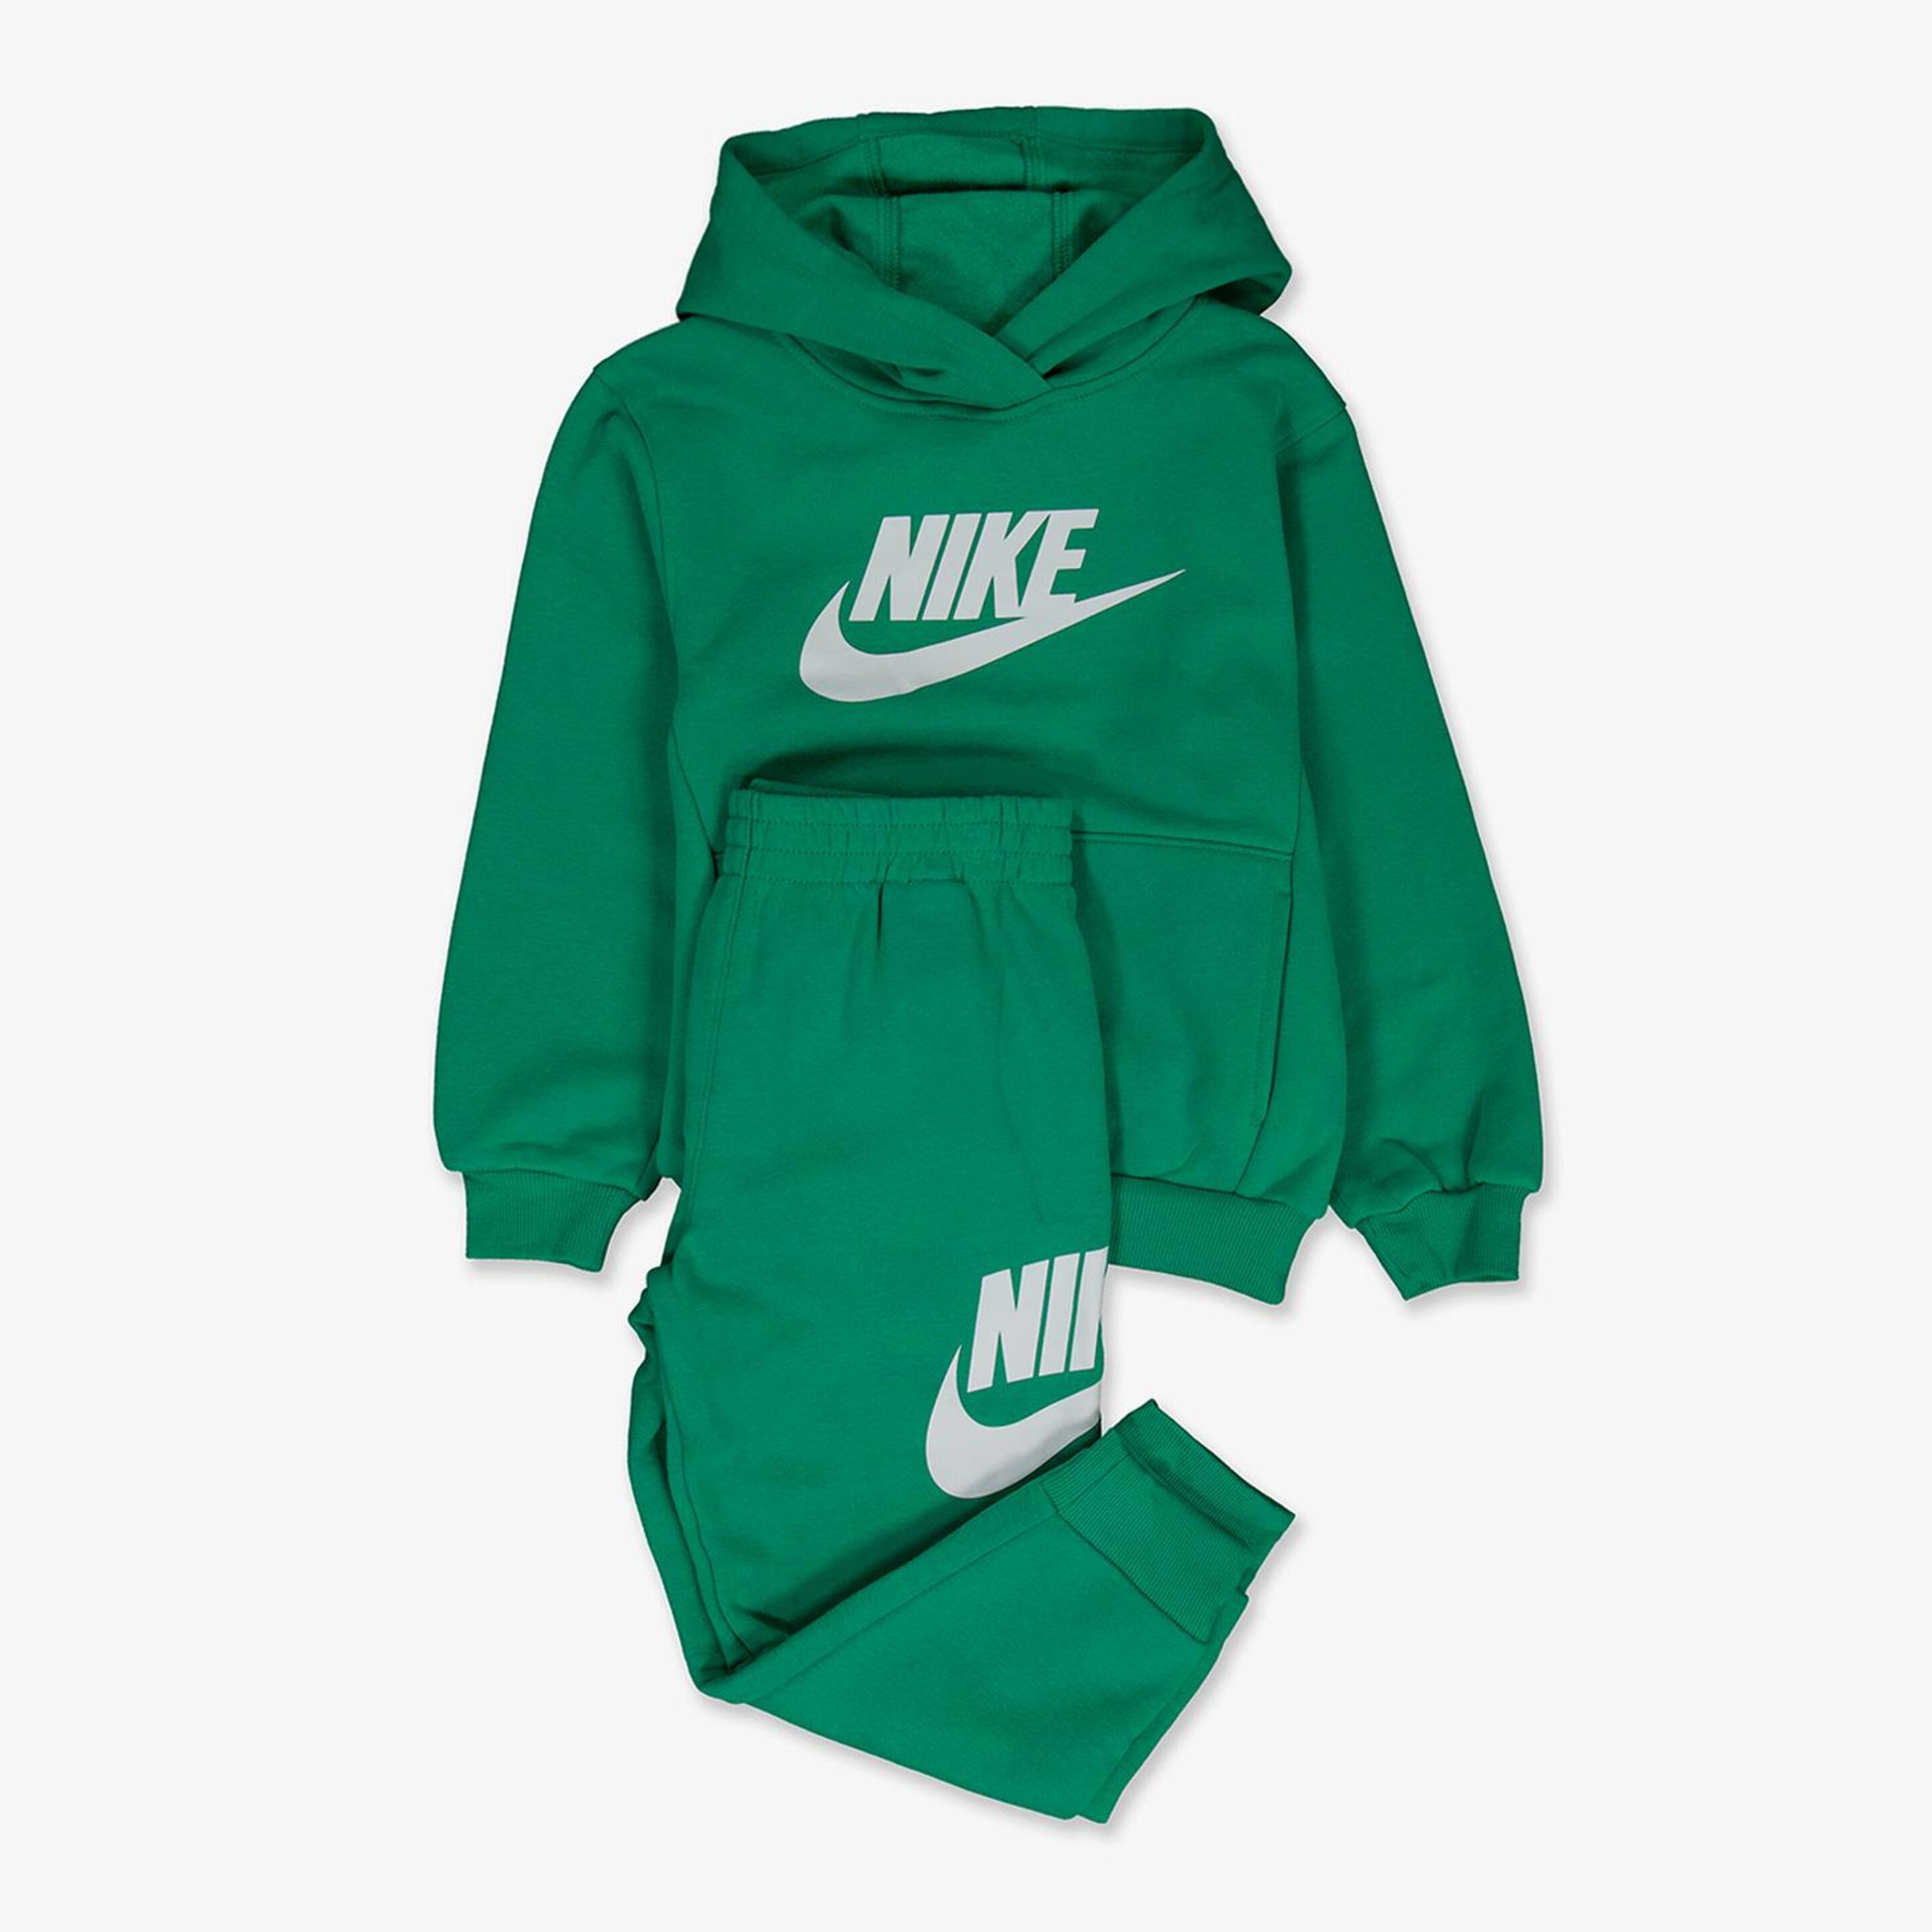 Chándal Nike - verde - Chándal Niño